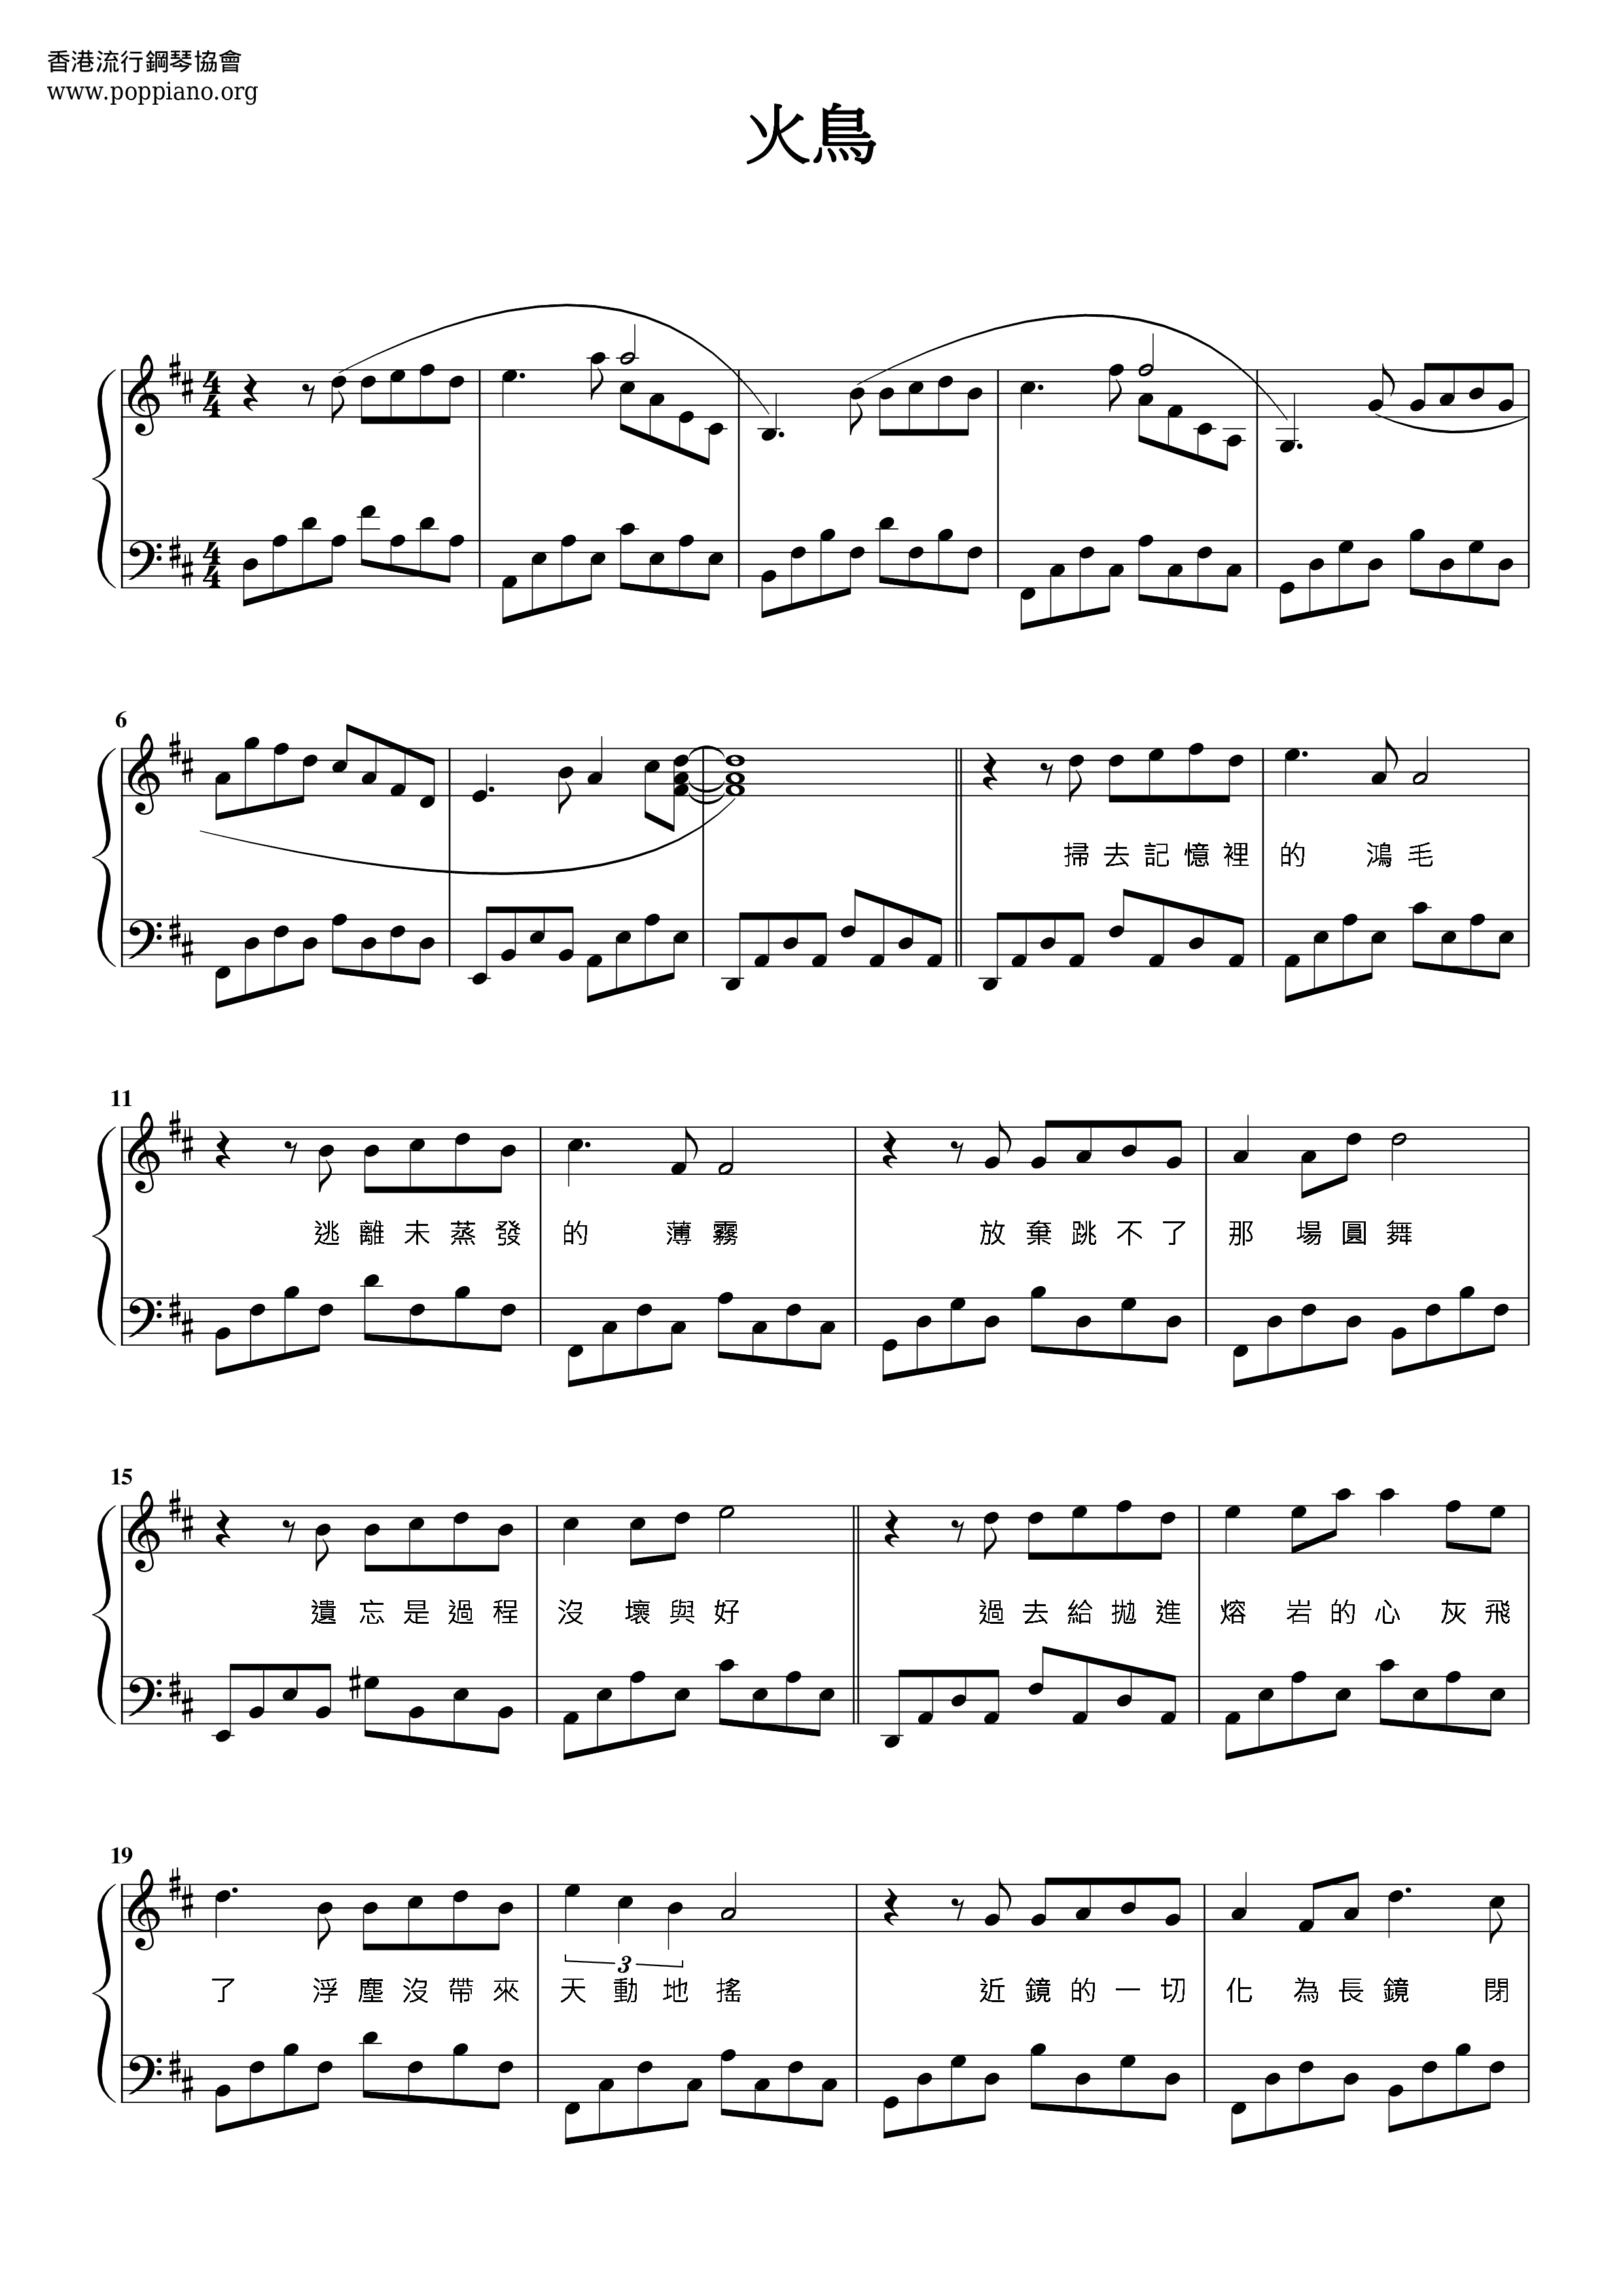 Firebird Score